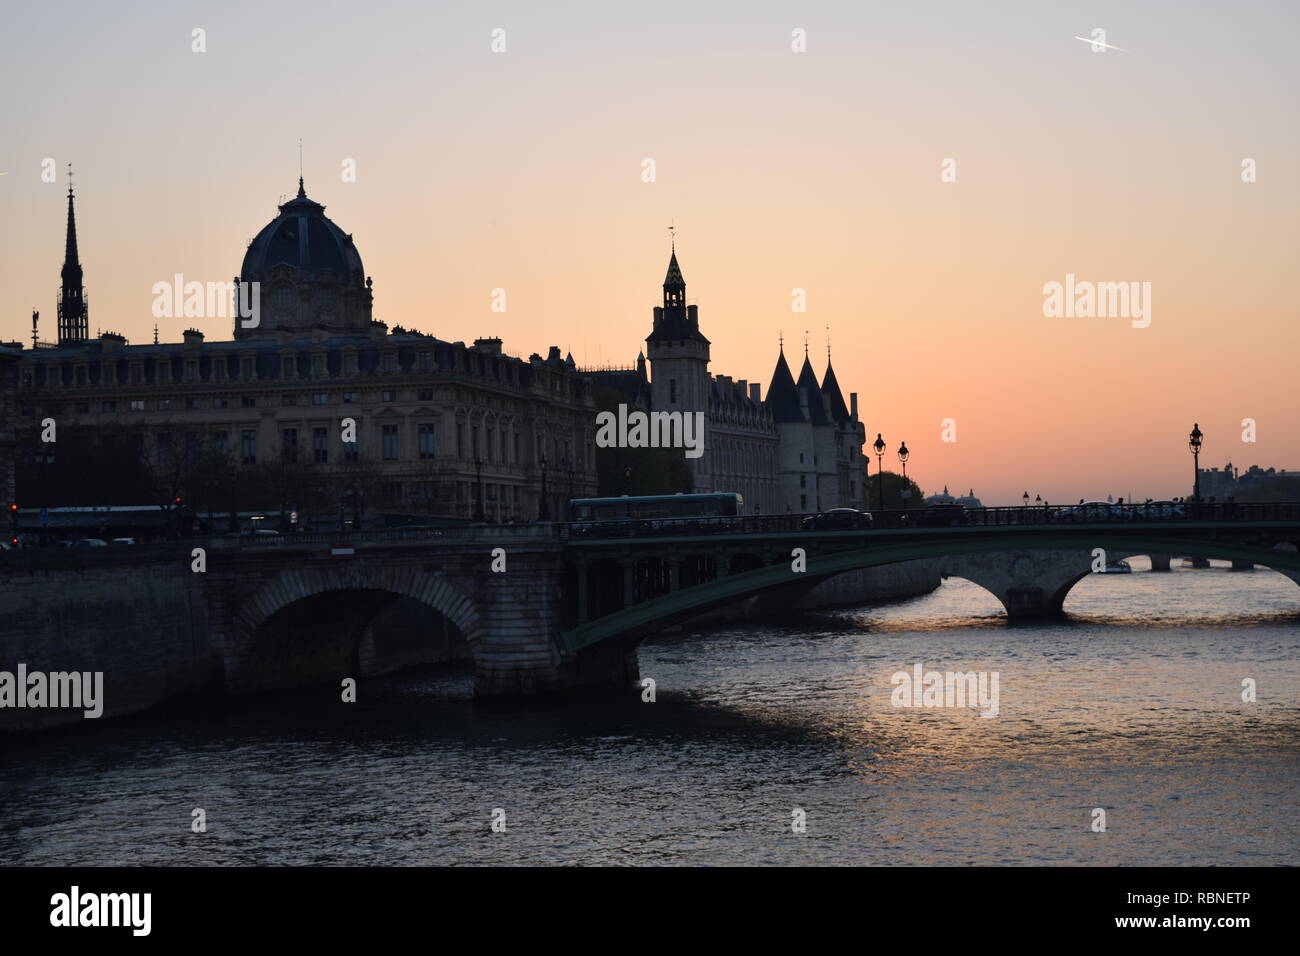 paesaggio urbano di uno dei tanti ponti sulla senna a parigi sede di tanto turismo Stock Photo